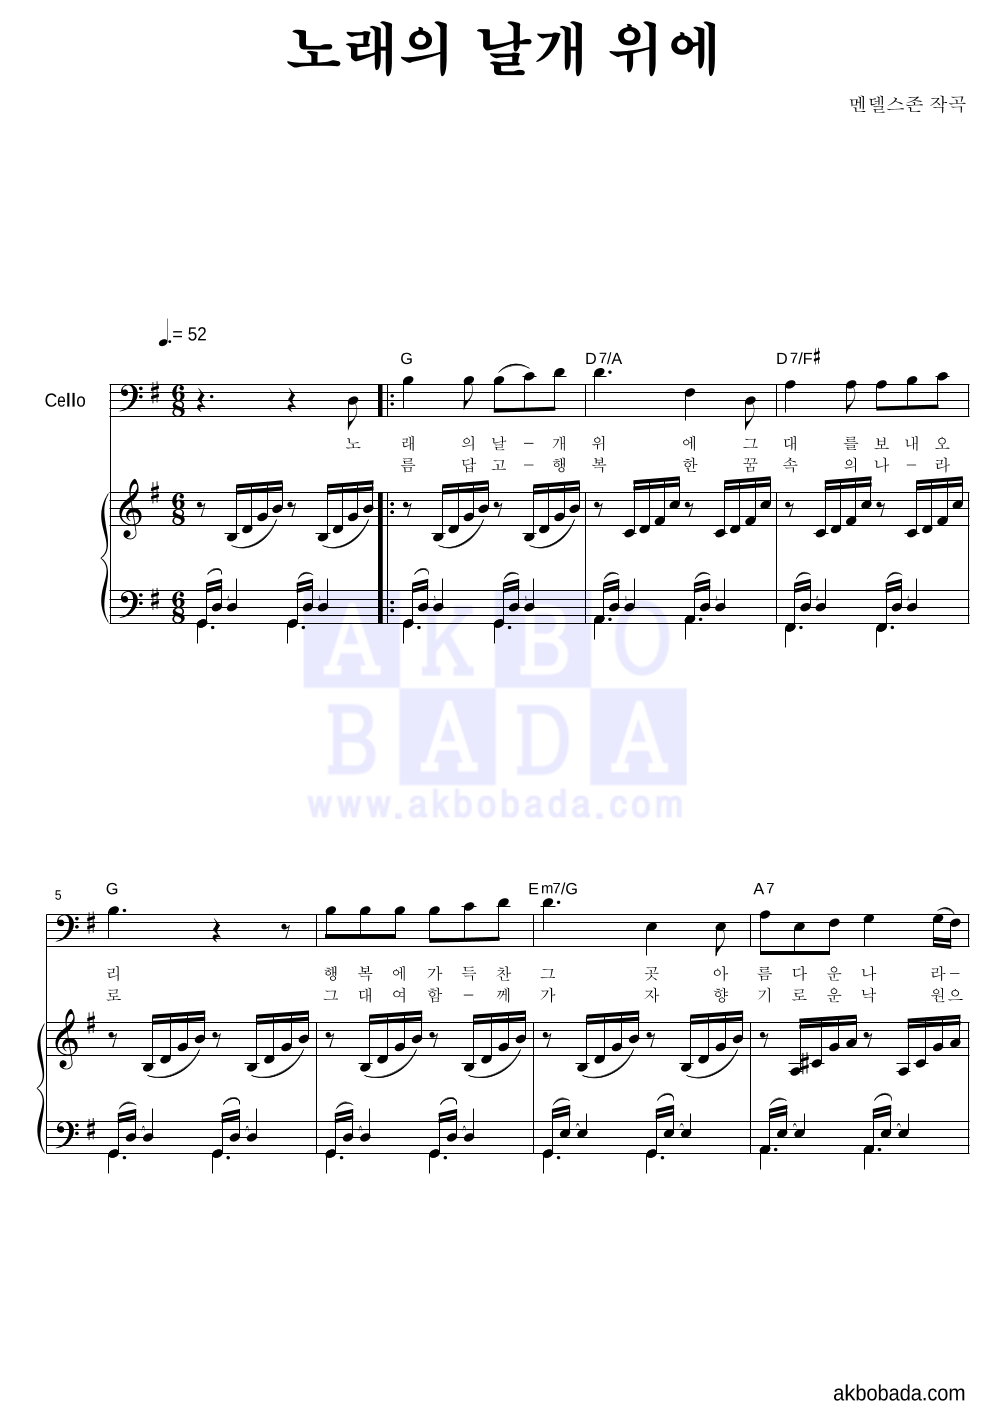 멘델스존 - 노래의 날개 위에 첼로&피아노 악보 